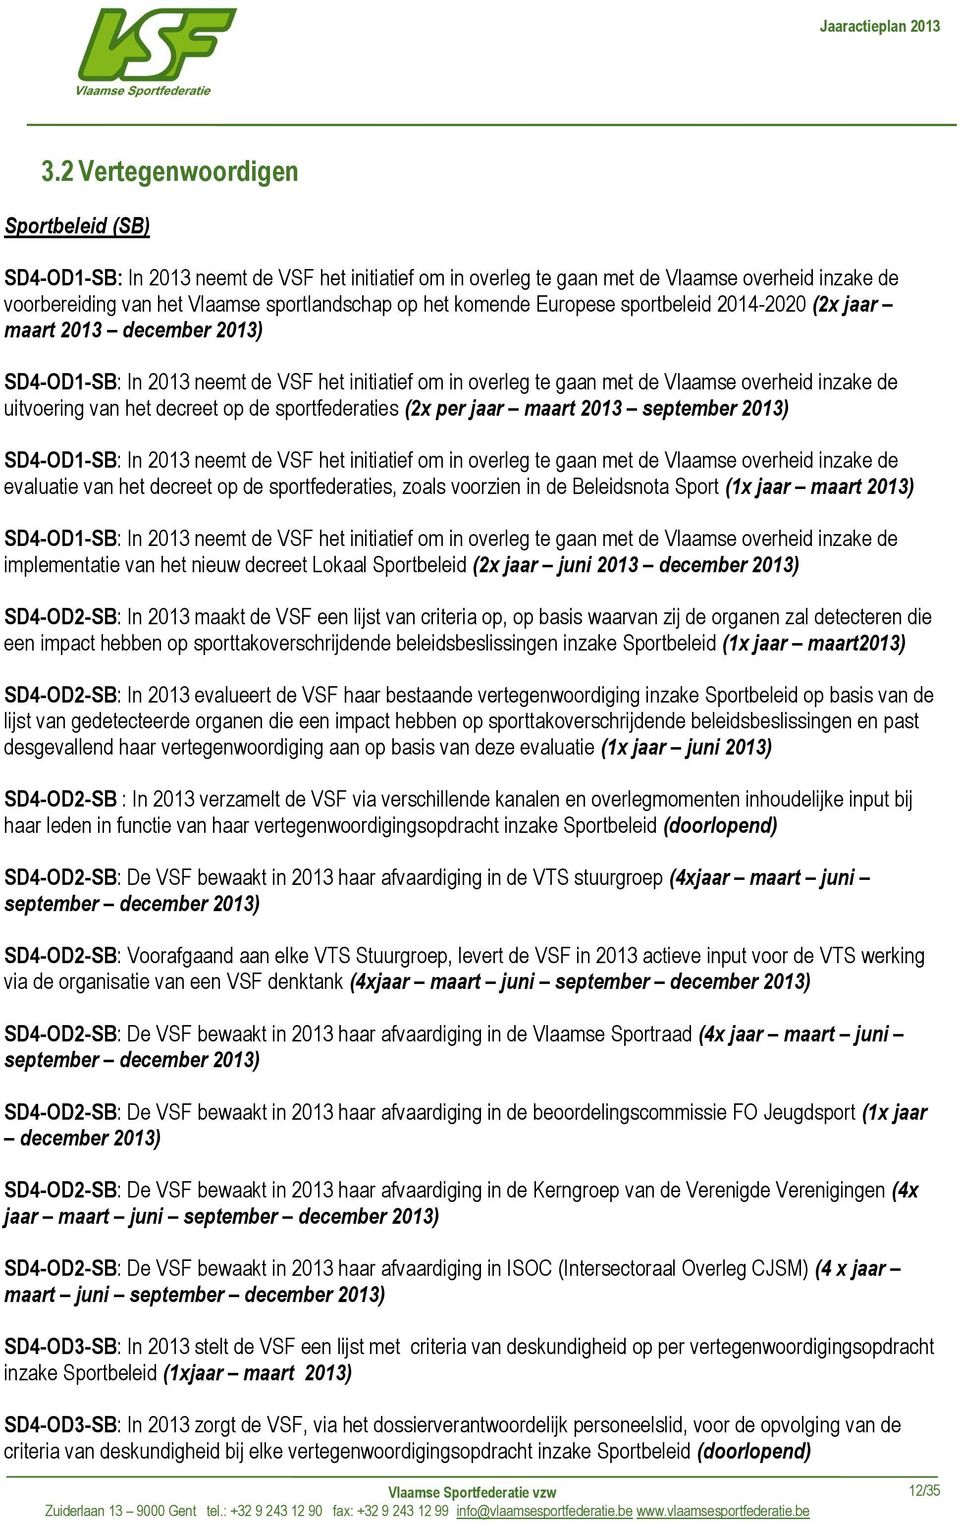 decreet op de sportfederaties (2x per jaar maart 2013 september 2013) SD4-OD1-SB: In 2013 neemt de VSF het initiatief om in overleg te gaan met de Vlaamse overheid inzake de evaluatie van het decreet